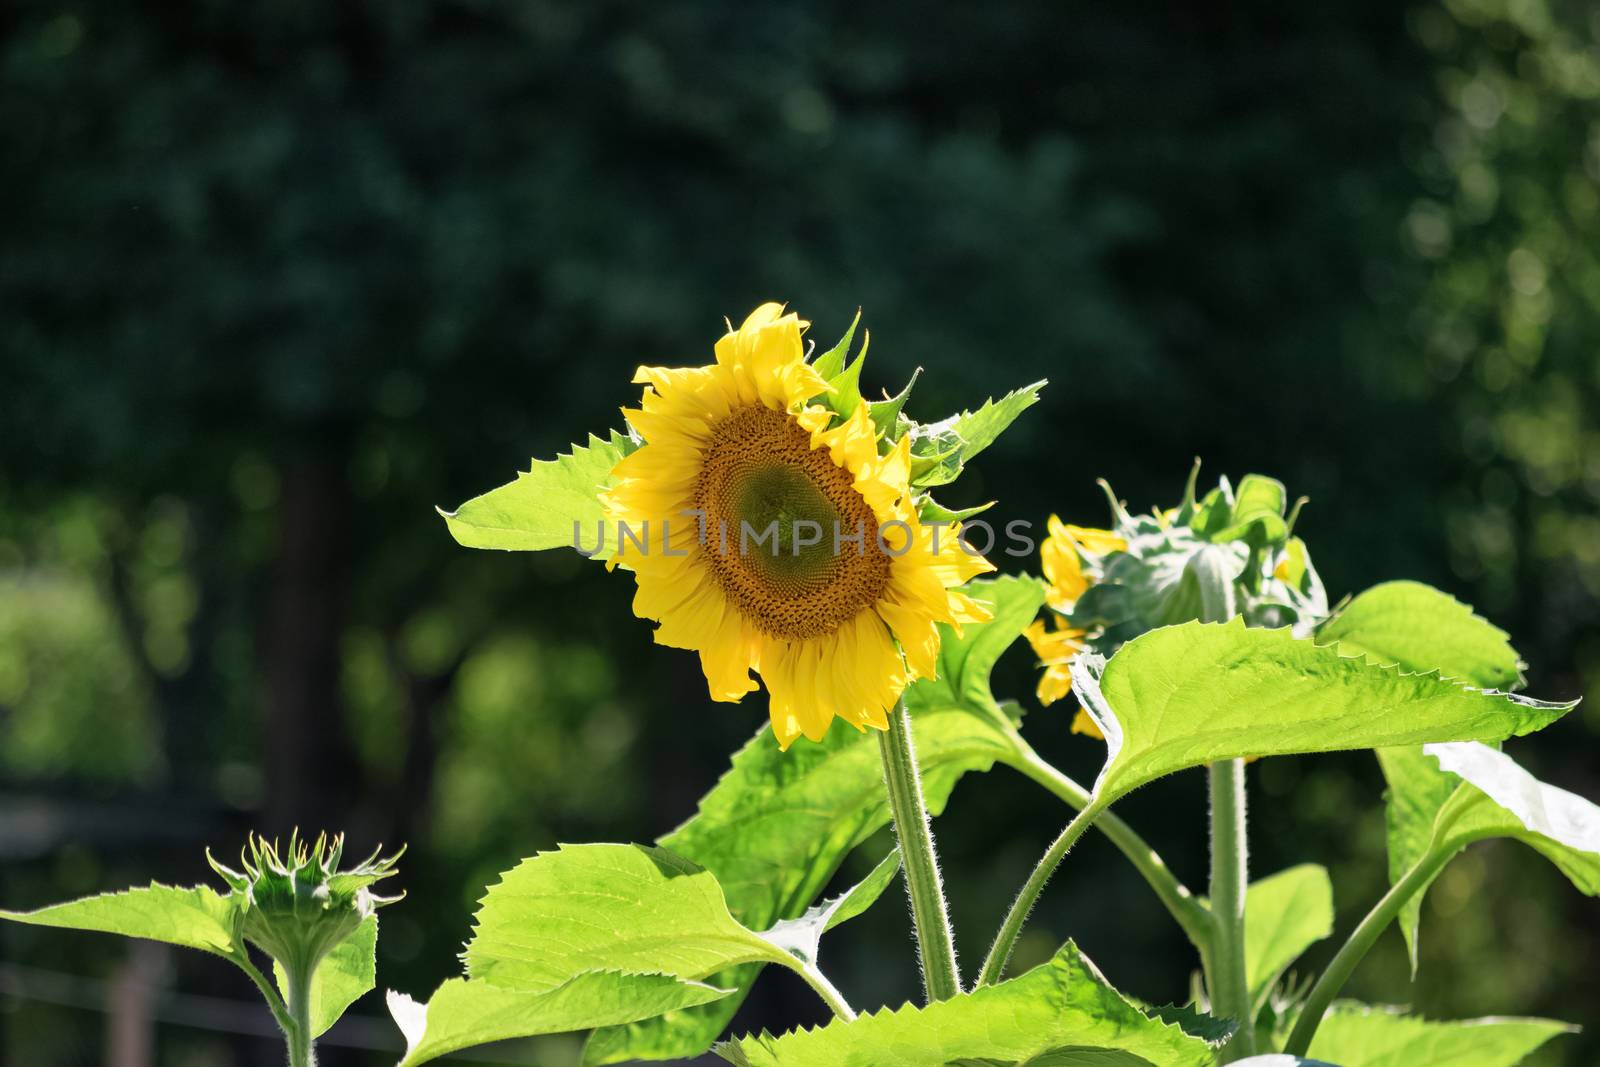 Sunflower by Mendelex